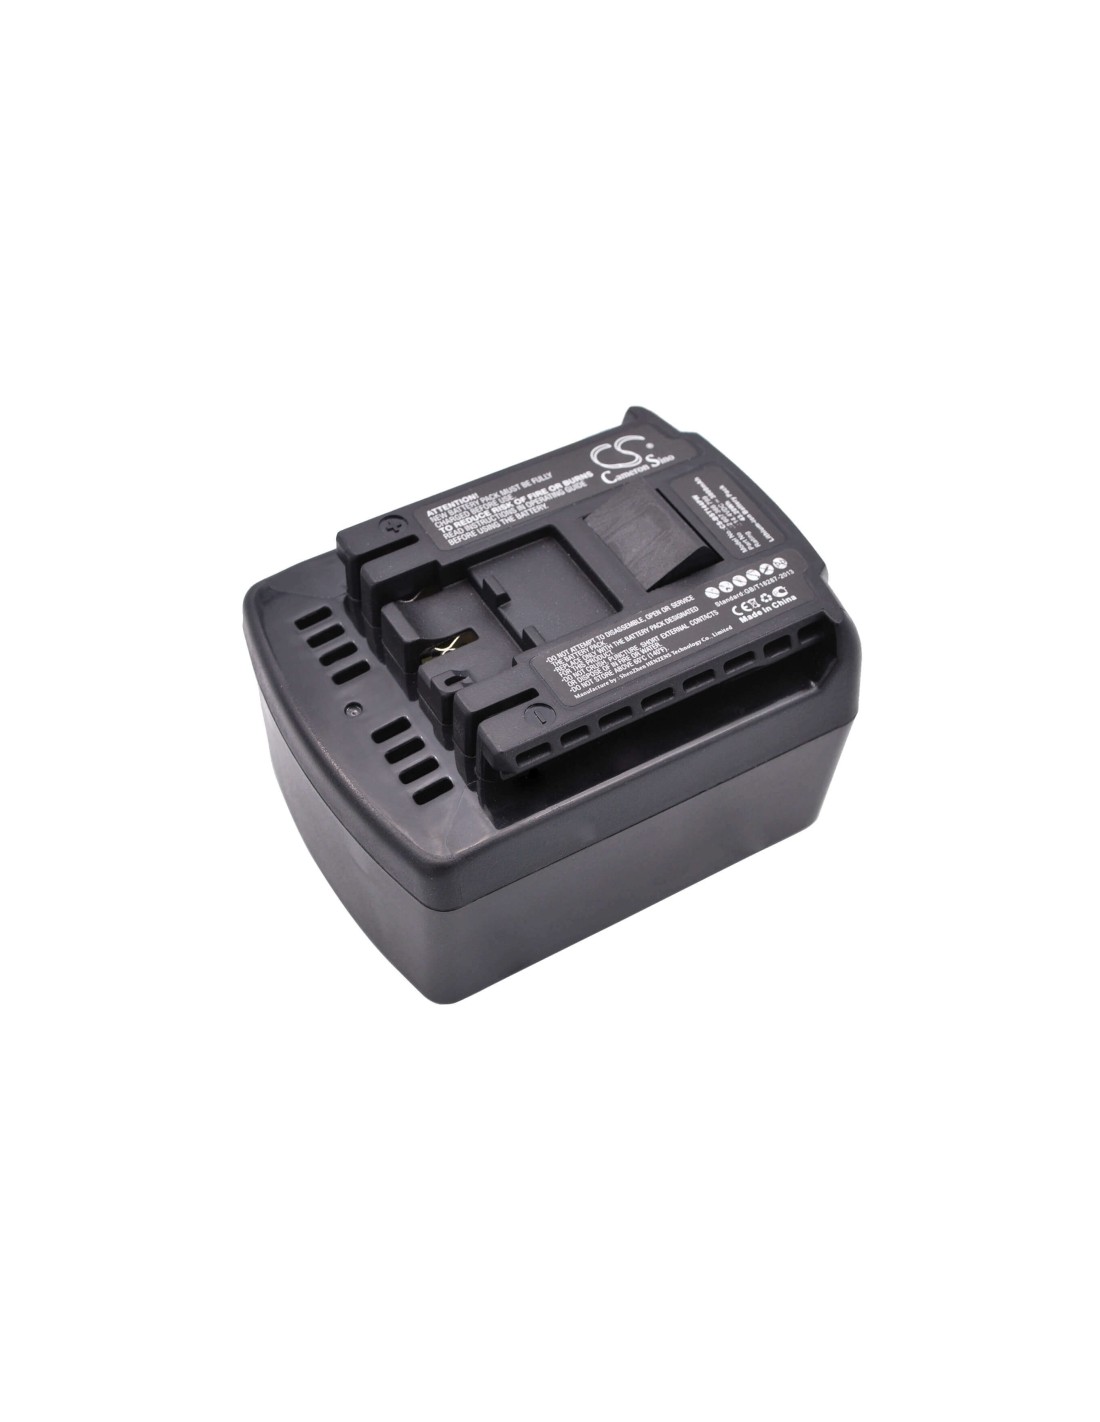 Battery for Bosch 25614, 26614, 26614-01 14.4V, 3000mAh - 43.20Wh